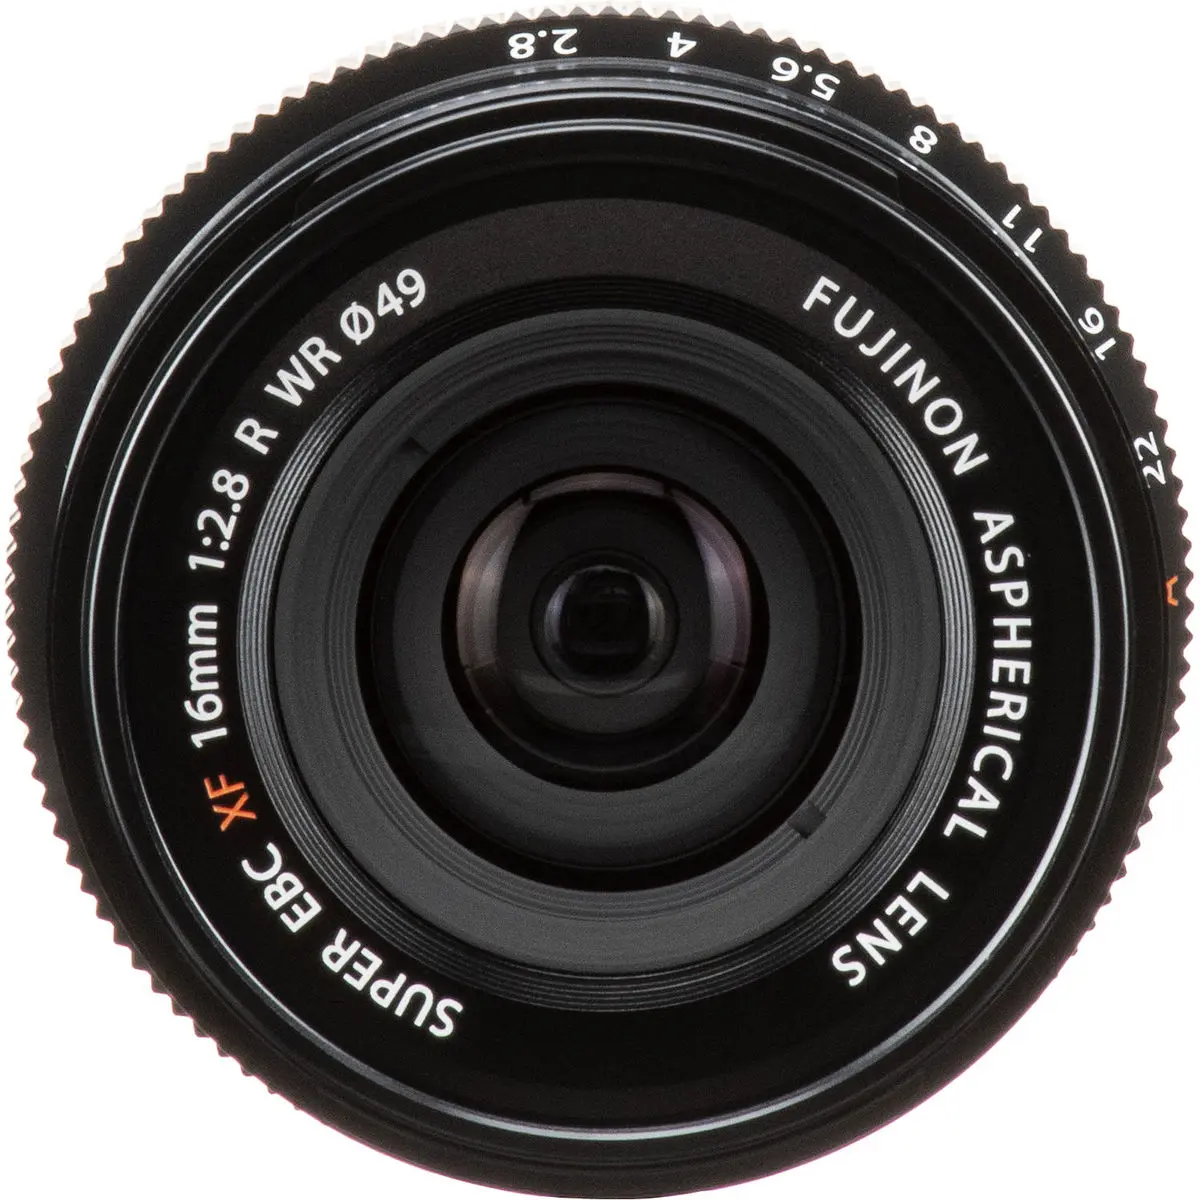 6. FUJINON XF 16mm F2.8 R WR Black Lens